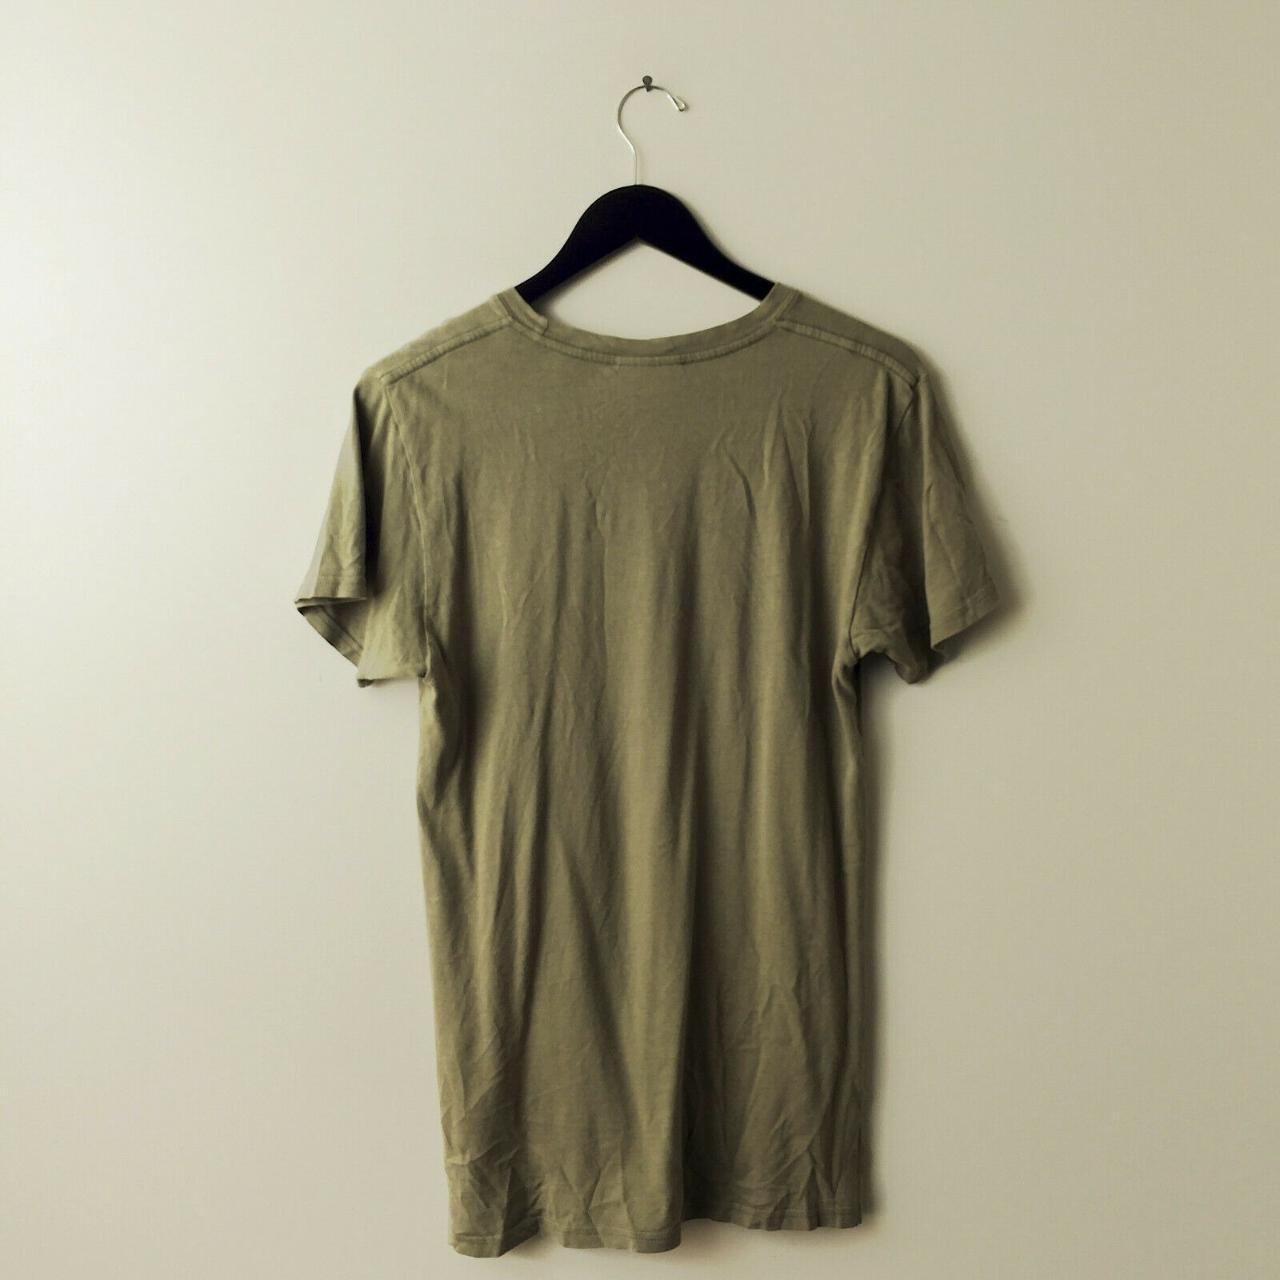 Product Image 2 - KNYEW T Shirt Basic Minimal